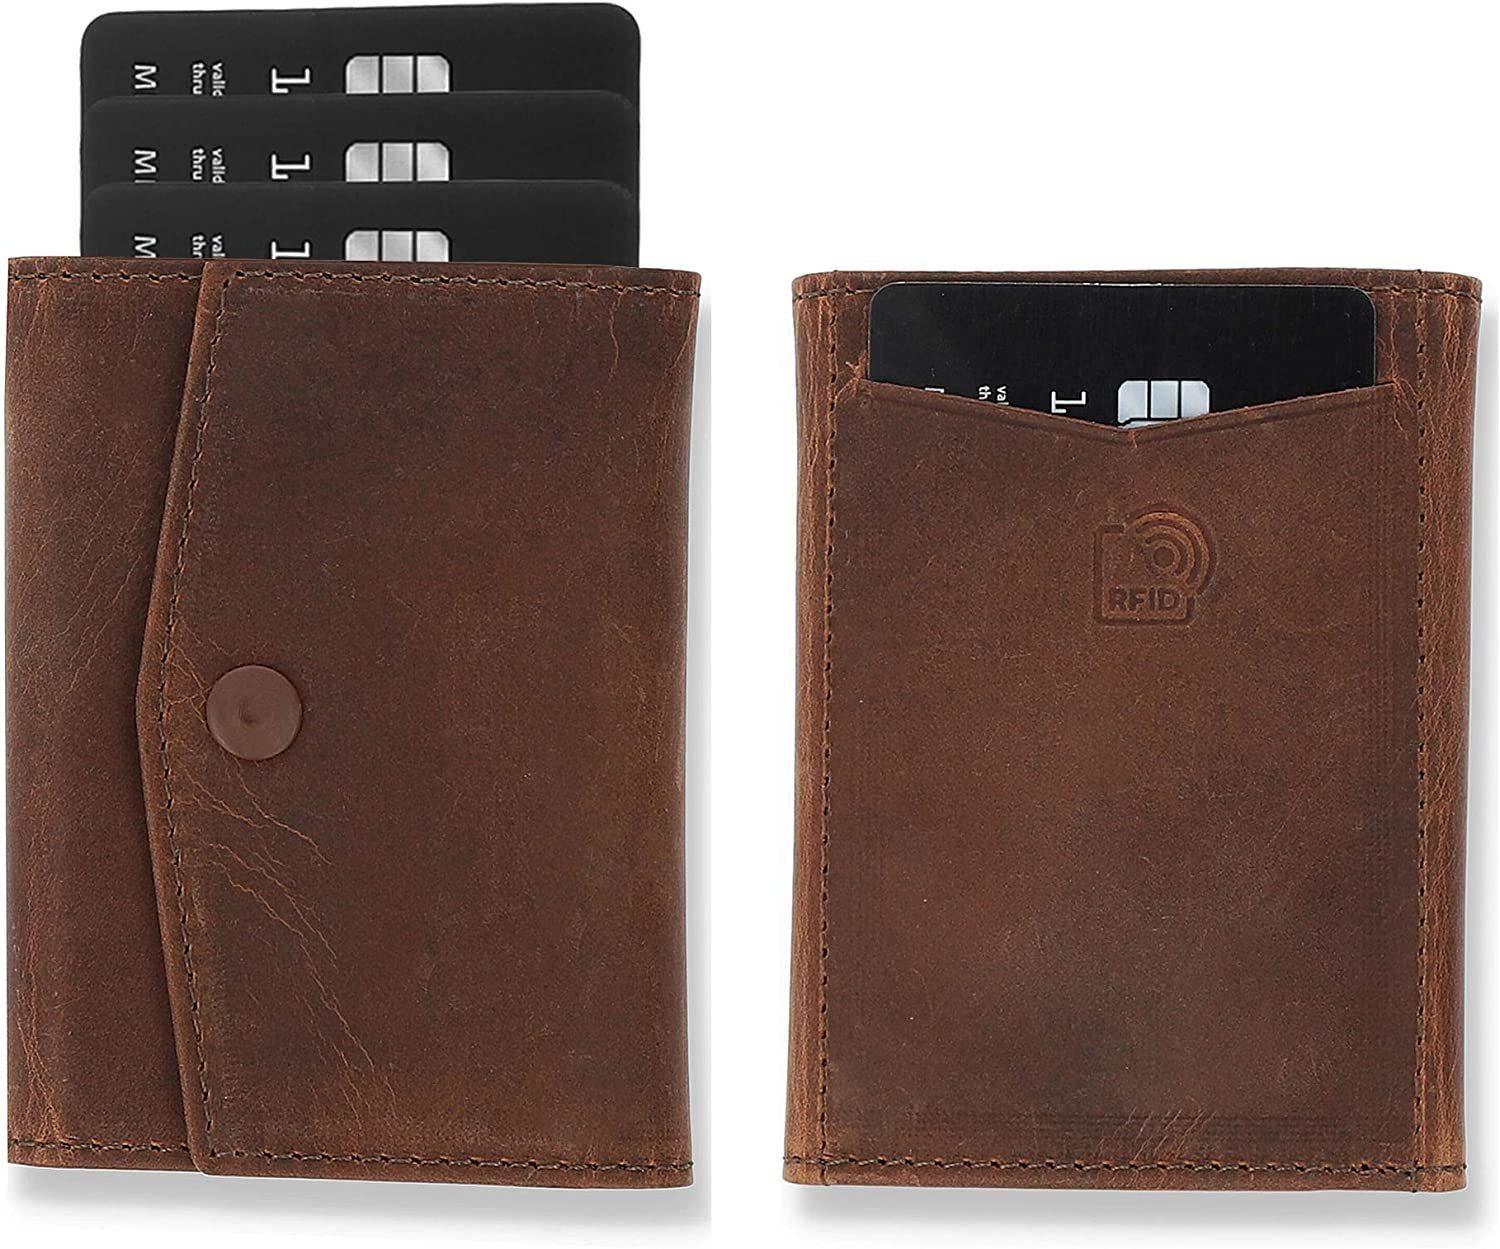 Solo Pelle Geldbörse Slim Wallet mit Münzfach I Geldbeutel mit RFID Schutz I für 12 Karten, RFID Schutz, Echtes Leder, dünne Geldbörse Vintage Braun ohne Münzfach